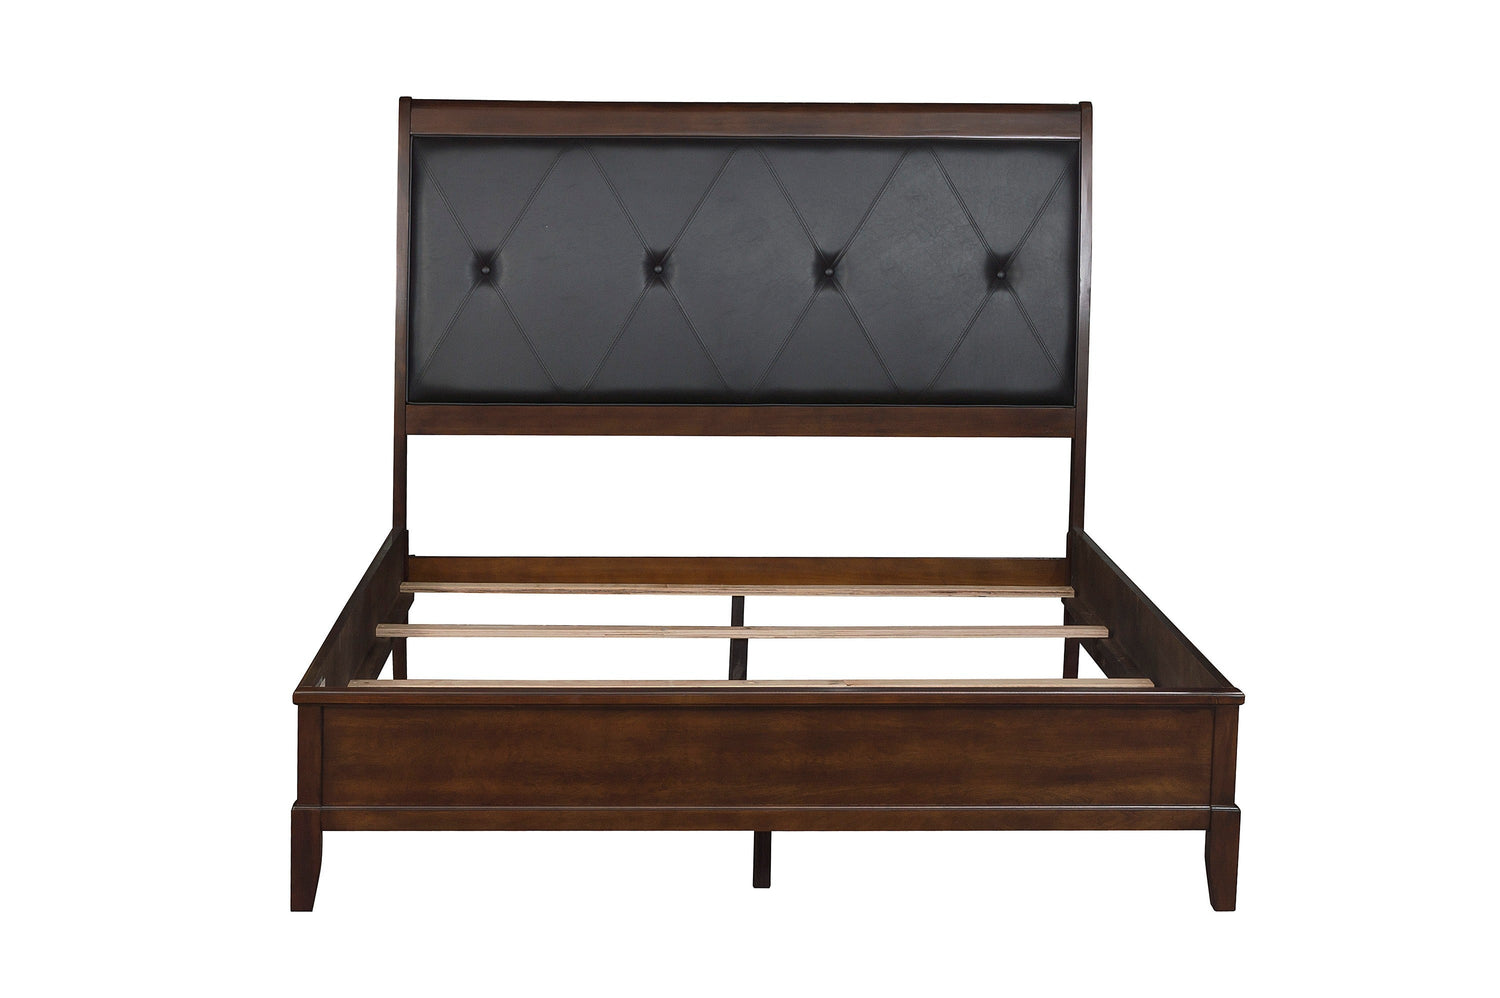 Cotterill Cherry Upholstered Panel Bedroom Set - SET | 1730-1 | 1730-2 | 1730-3 | 1730-5 | 1730-6 - Bien Home Furniture &amp; Electronics